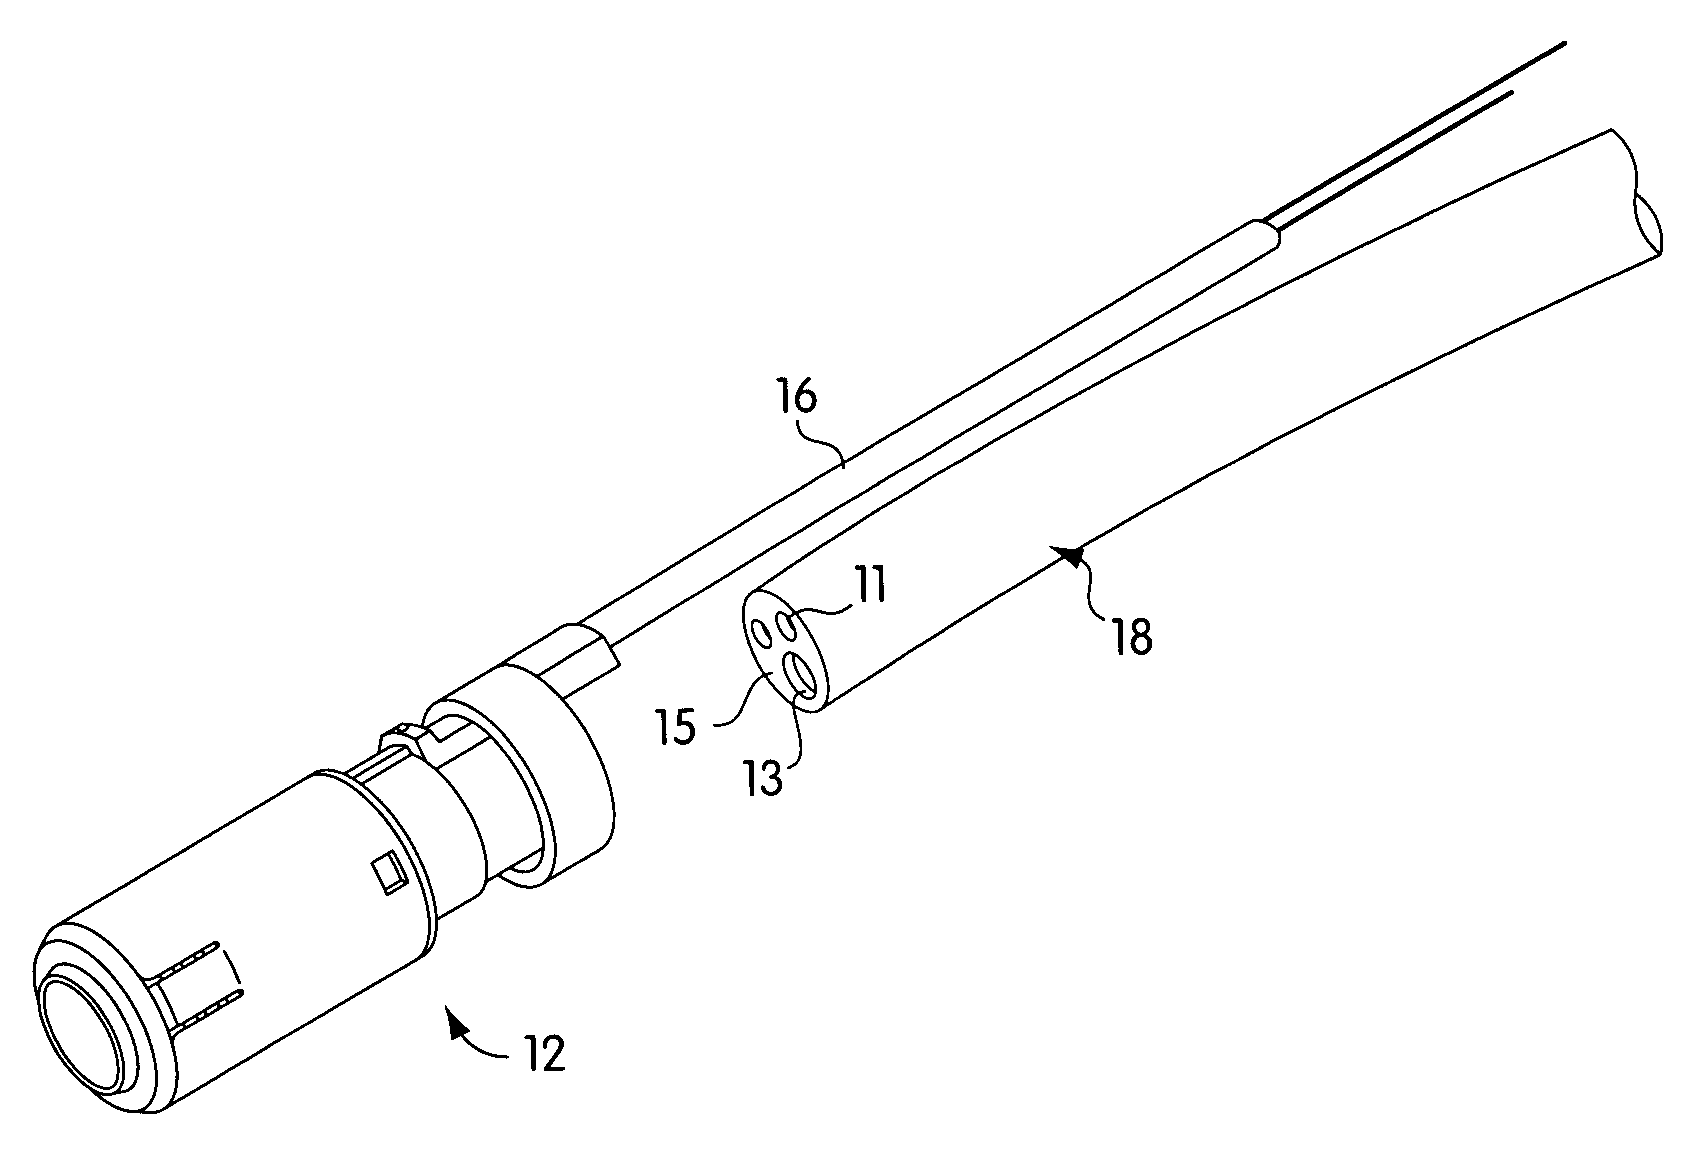 Endoscopic band ligator